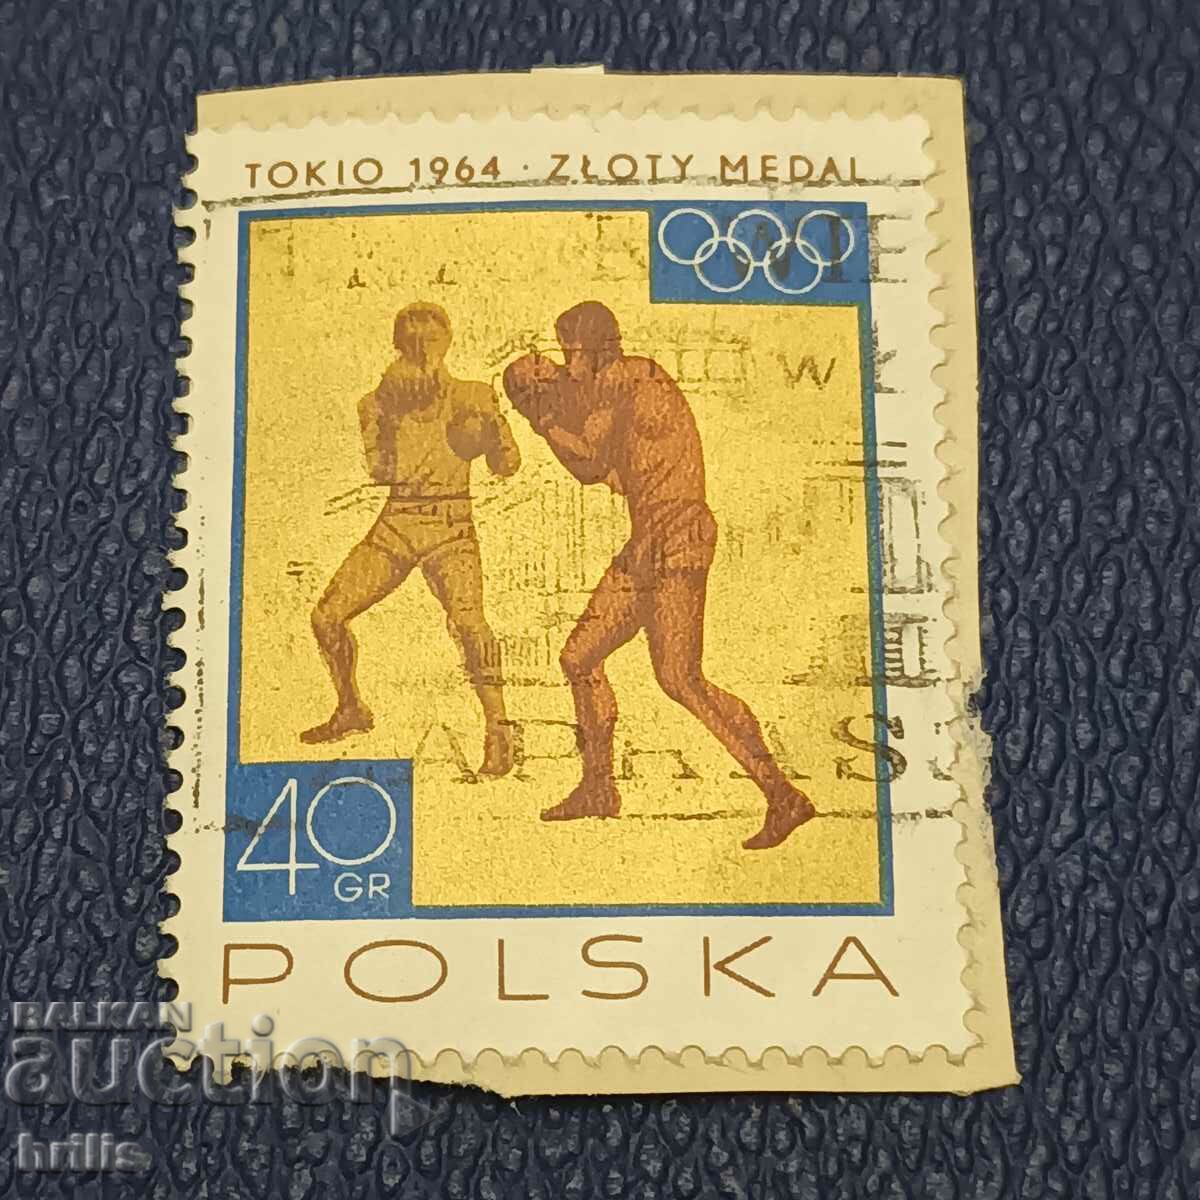 POLAND - 1964 - TOKYO OLYMPICS 64